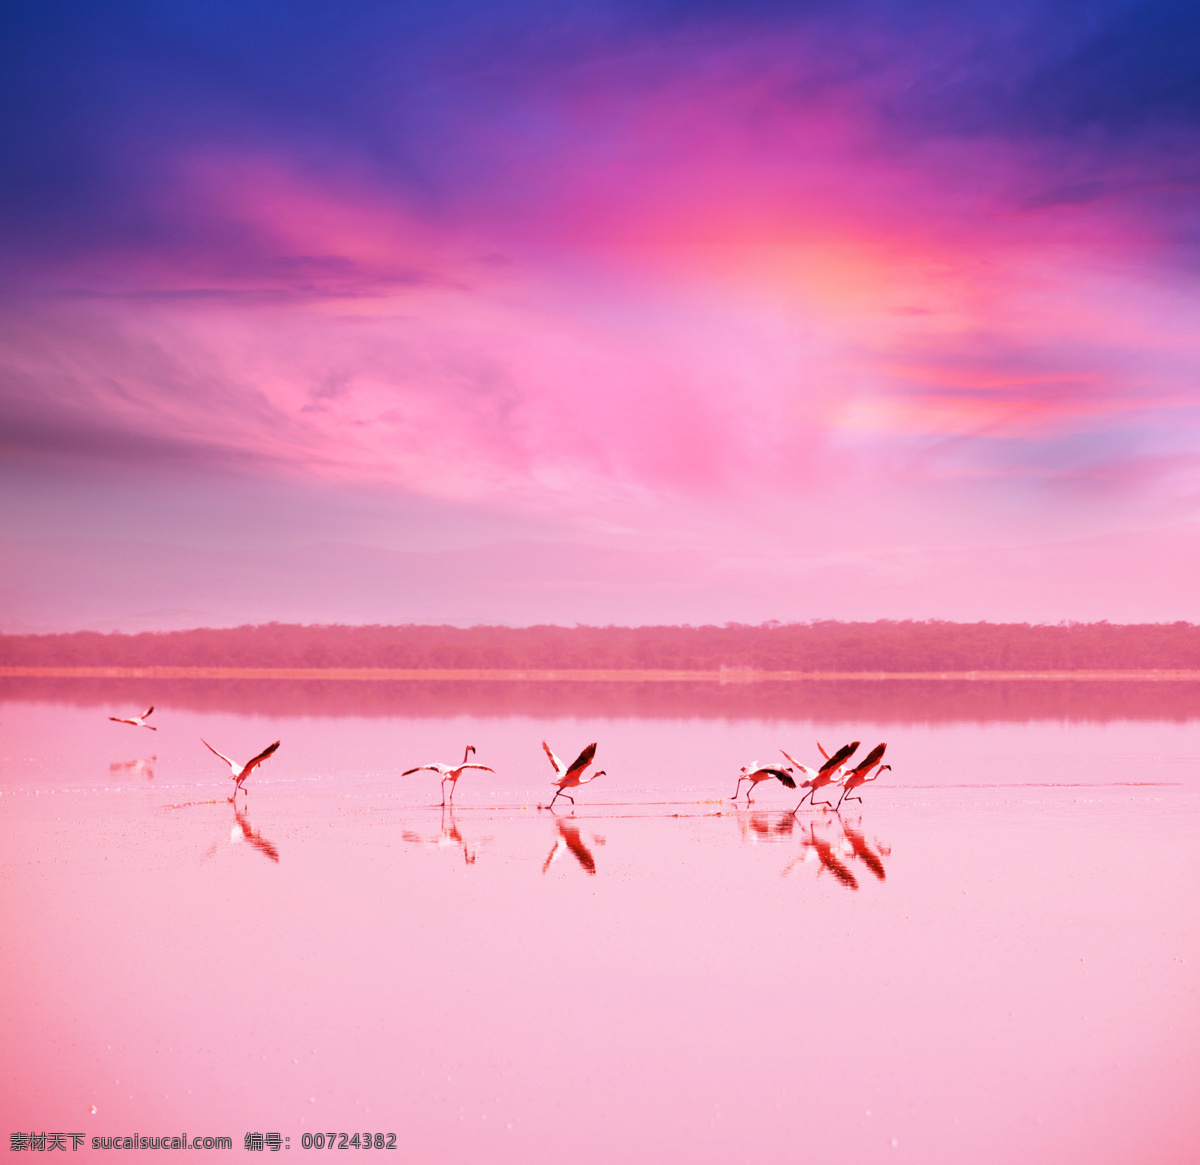 水面上的白鹤 水面 上 白鹤 动物 野生动物 夕阳风景 自然风景 飞禽 陆地动物 生物世界 粉色